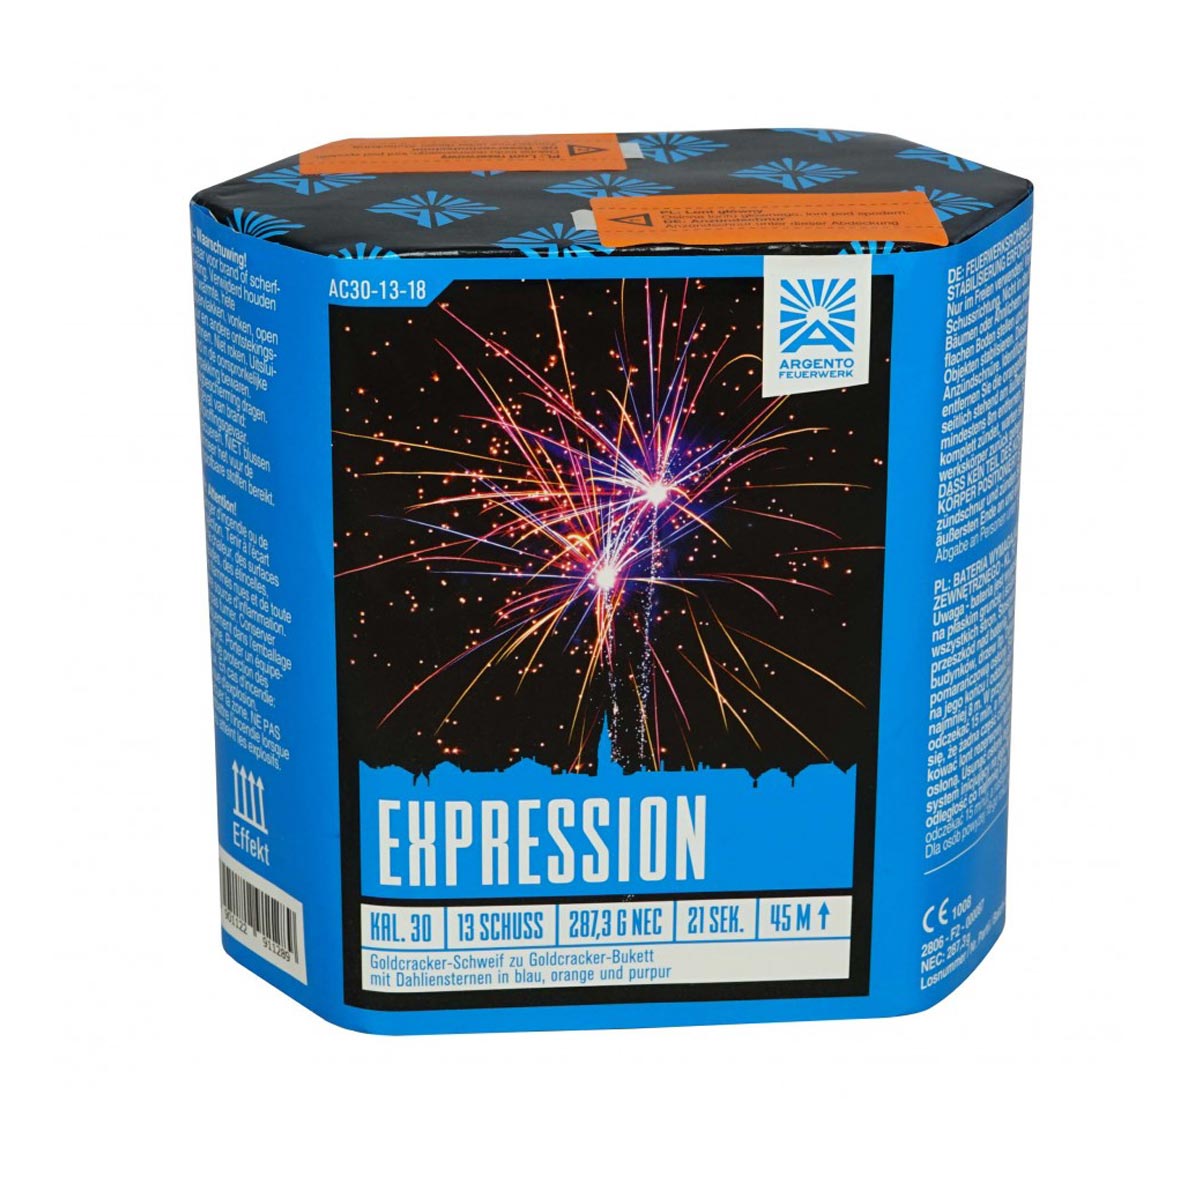 Expression von Funke, Batteriefeuerwerk